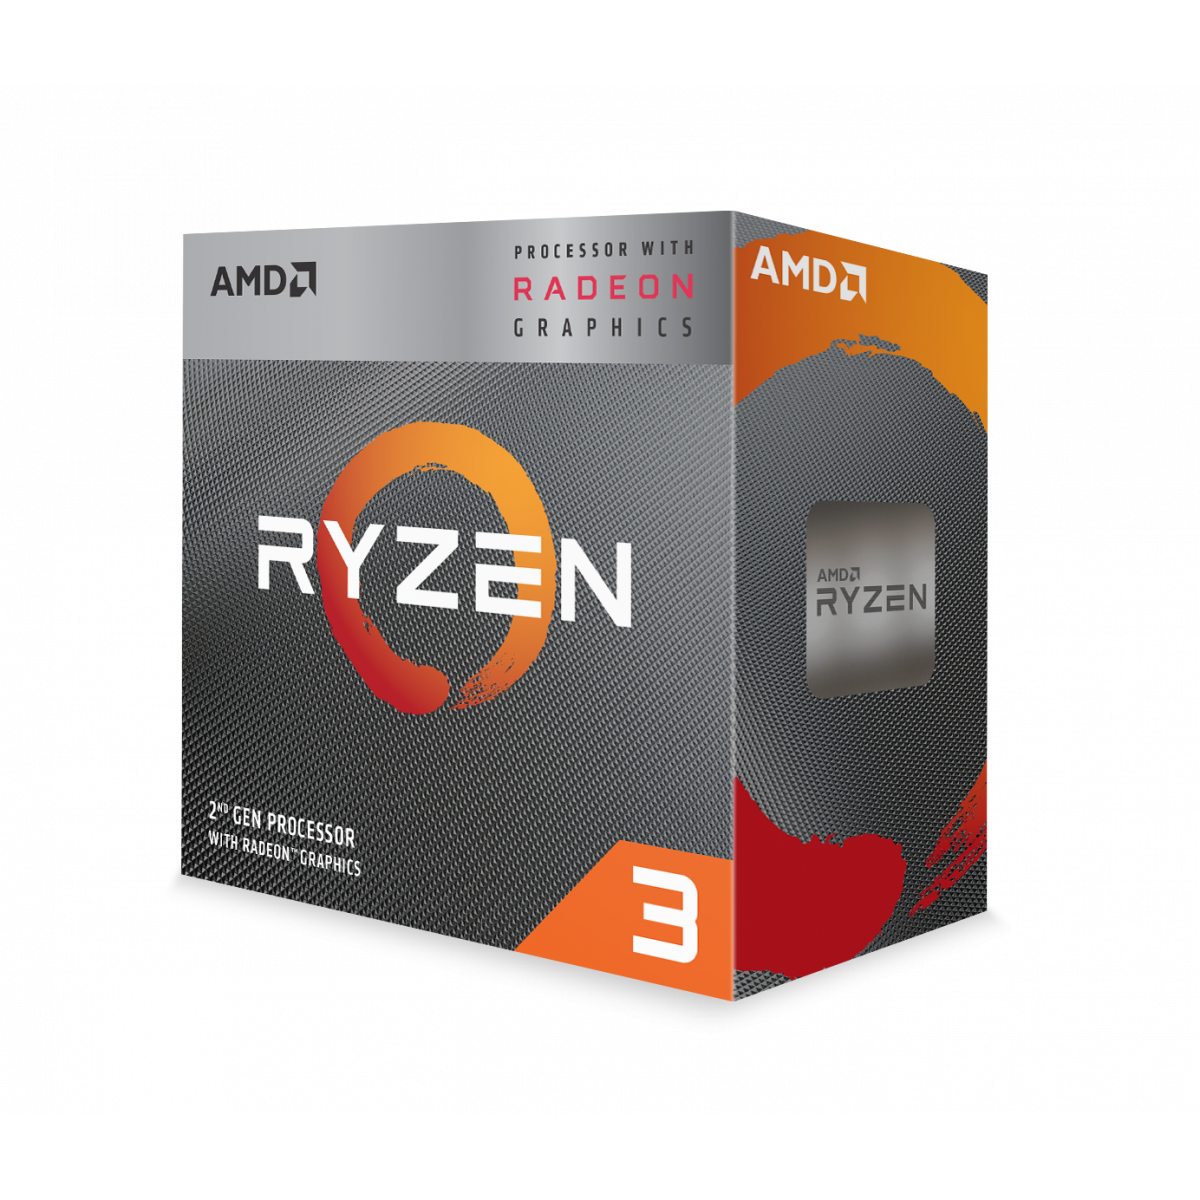 CPU AMD Ryzen 3 3200G | 6MB - 4.0GHz - 4 nhân 4 luồng - AM4